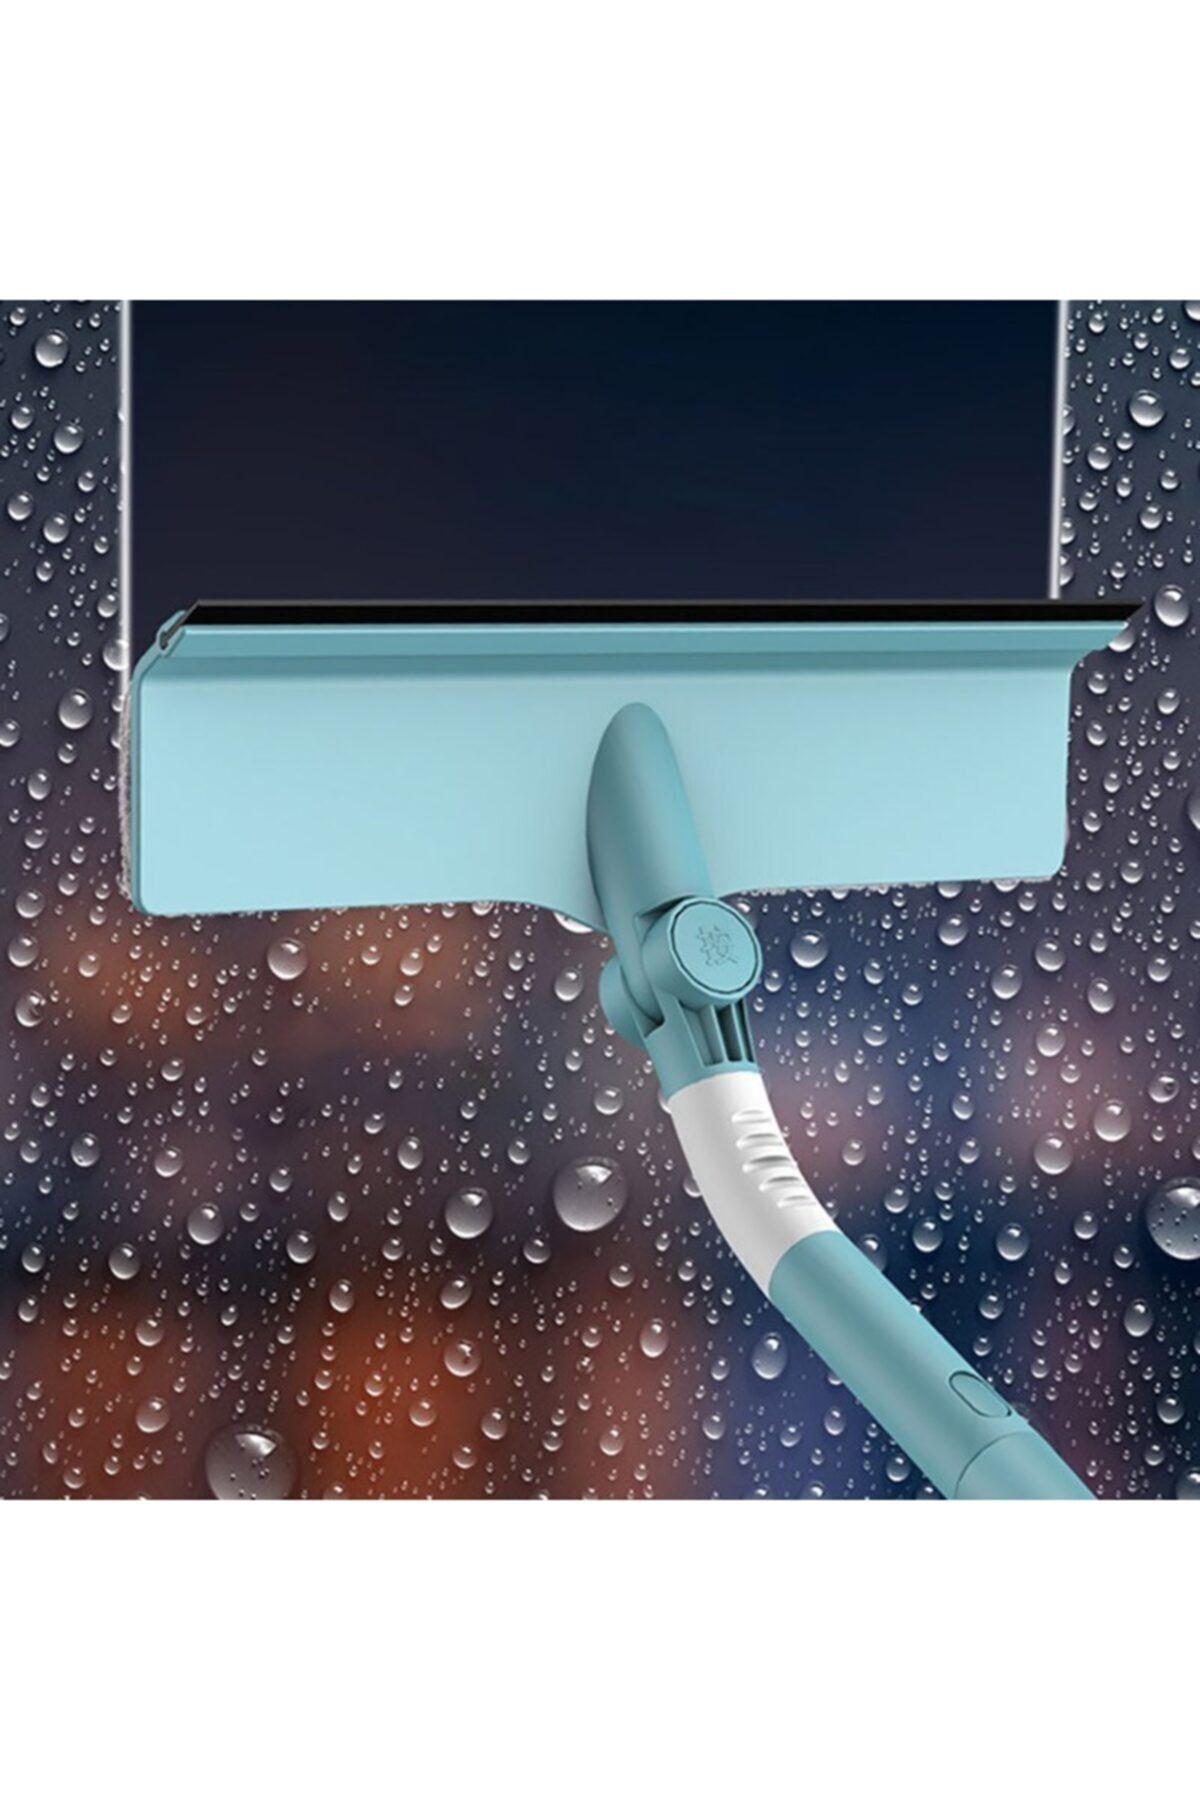 AYLA STAND Sihirli Pencere Temizleme Uzun Saplı Teleskopik Cam Sileceği Kazıyıcı Dönen Mops Yıkama Windows